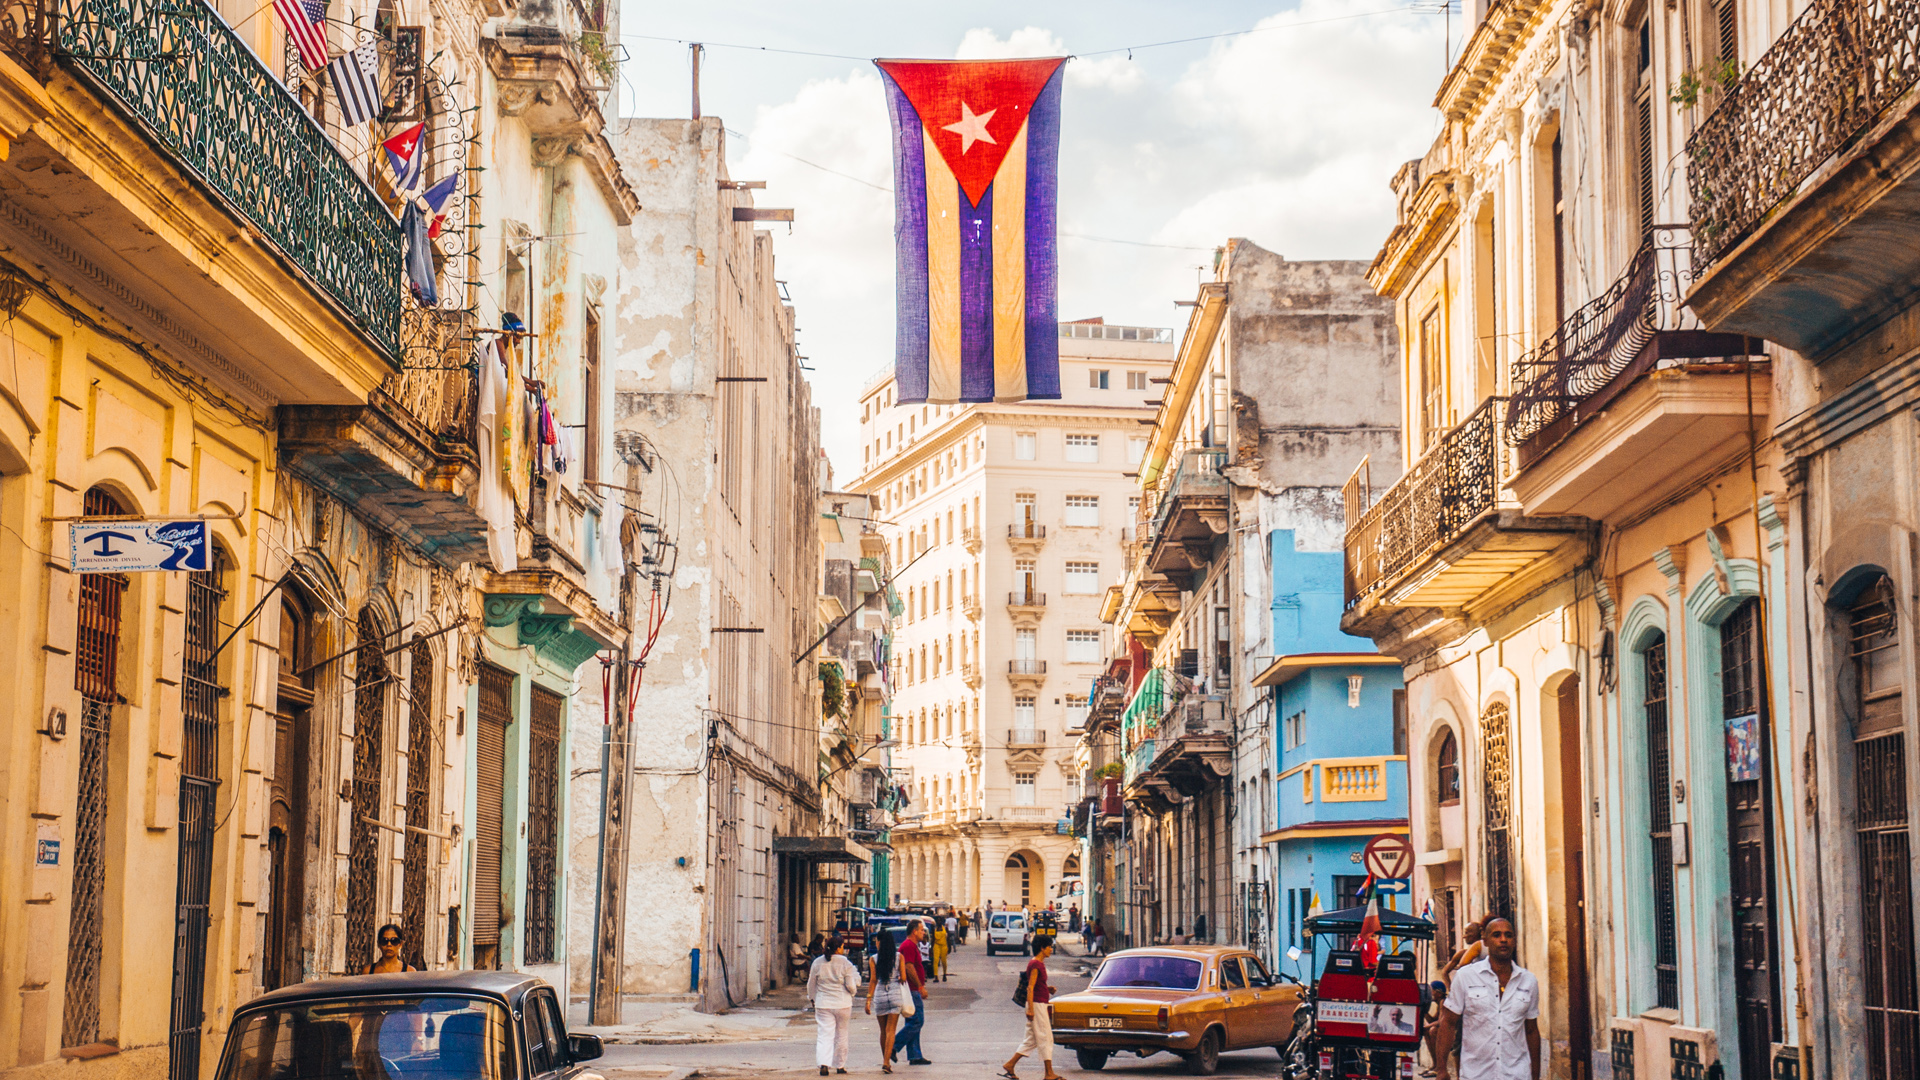 Havana, Cuba - December 22, 2015: A Cuban flag with holes waves over a street in Central Havana.